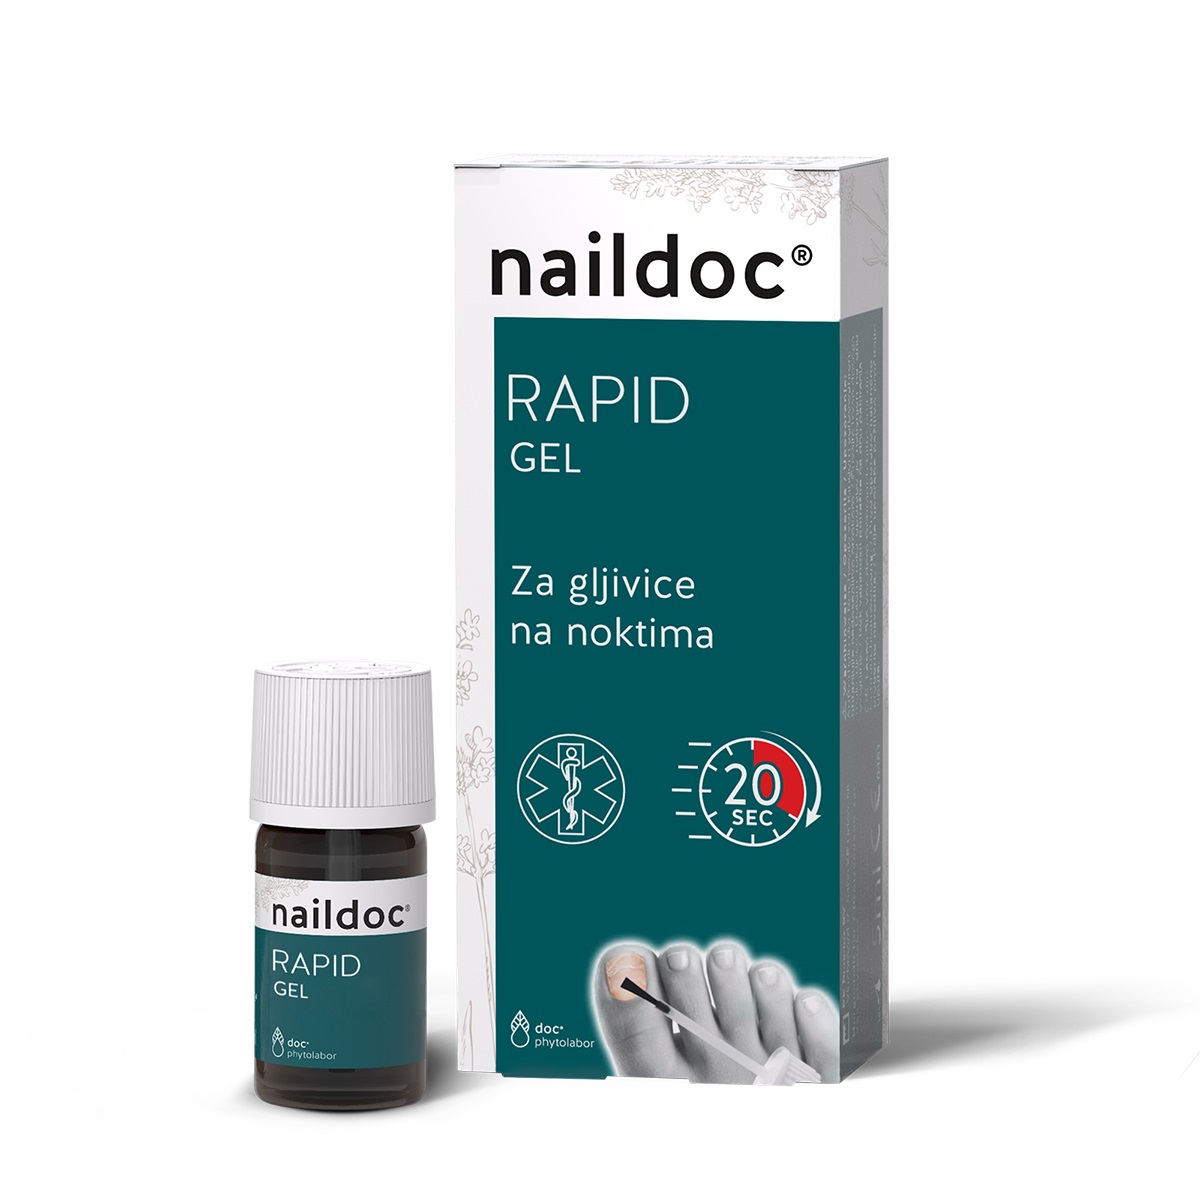 naildoc Rapid gel za gljivice na noktima